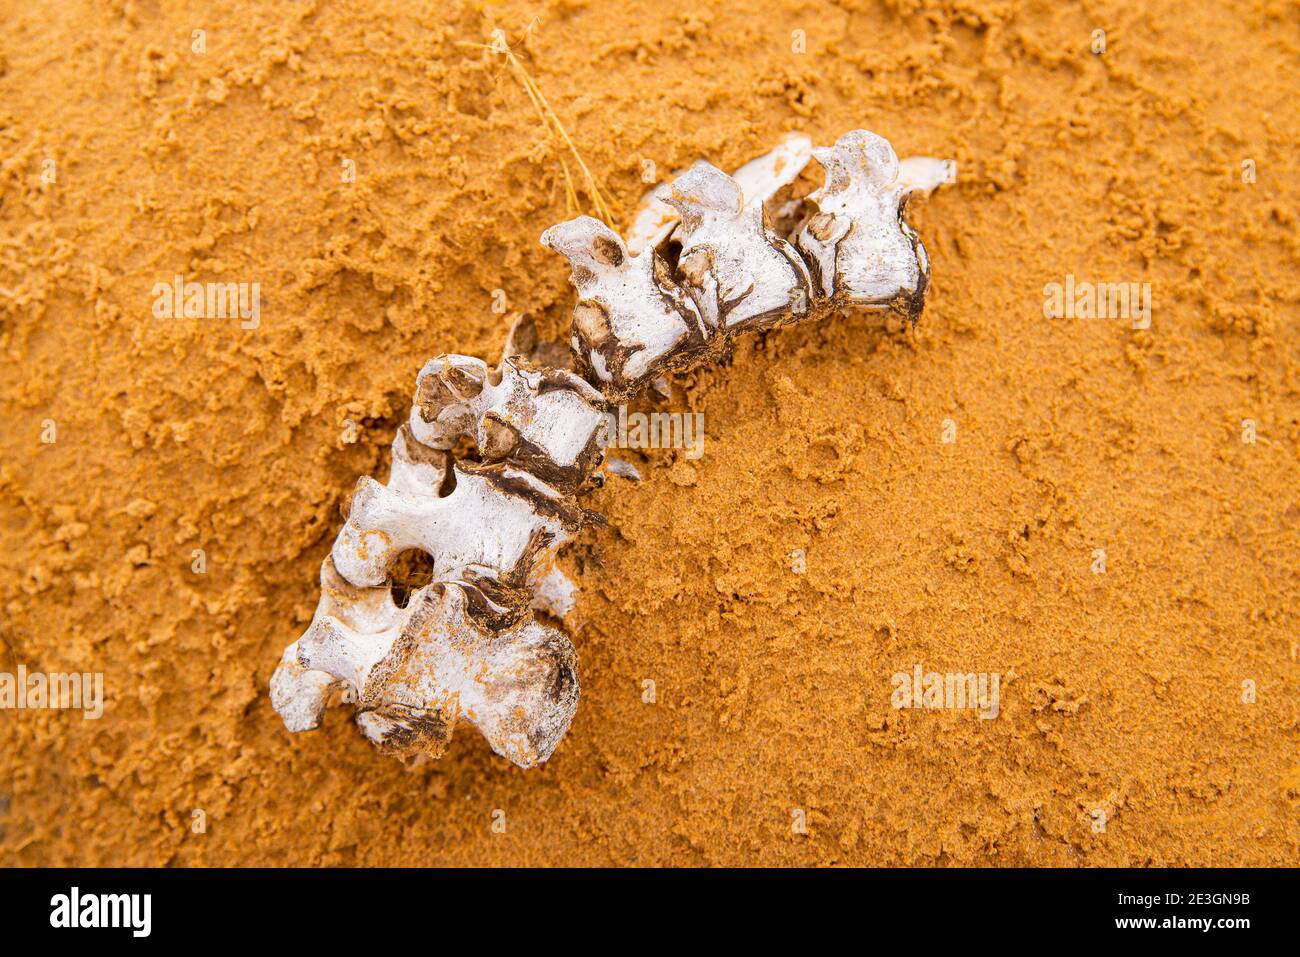 Tod in der Wüste. Weiße Knochen der Wirbelsäule oder Wirbelsäule in den kräuselnden Sanddünen in der Wüste. Stockfoto